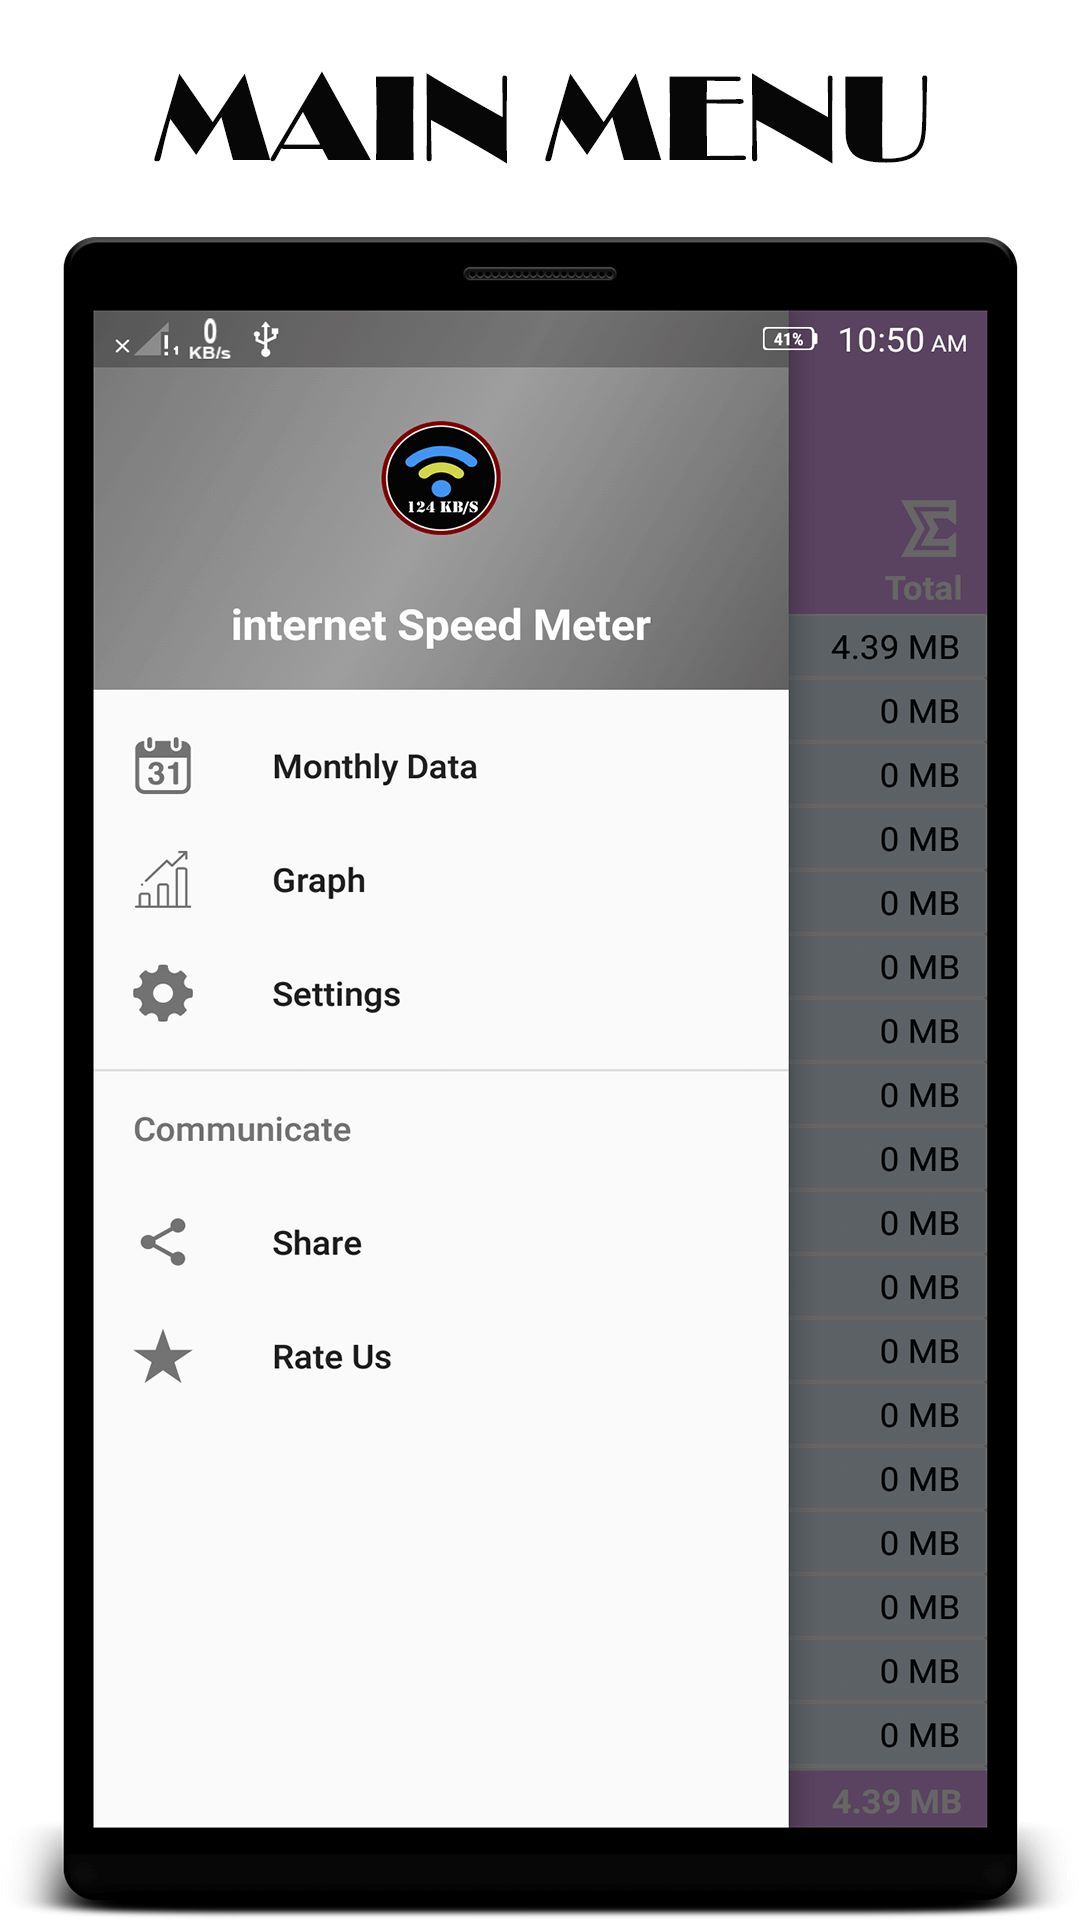 Internet Speed Meter